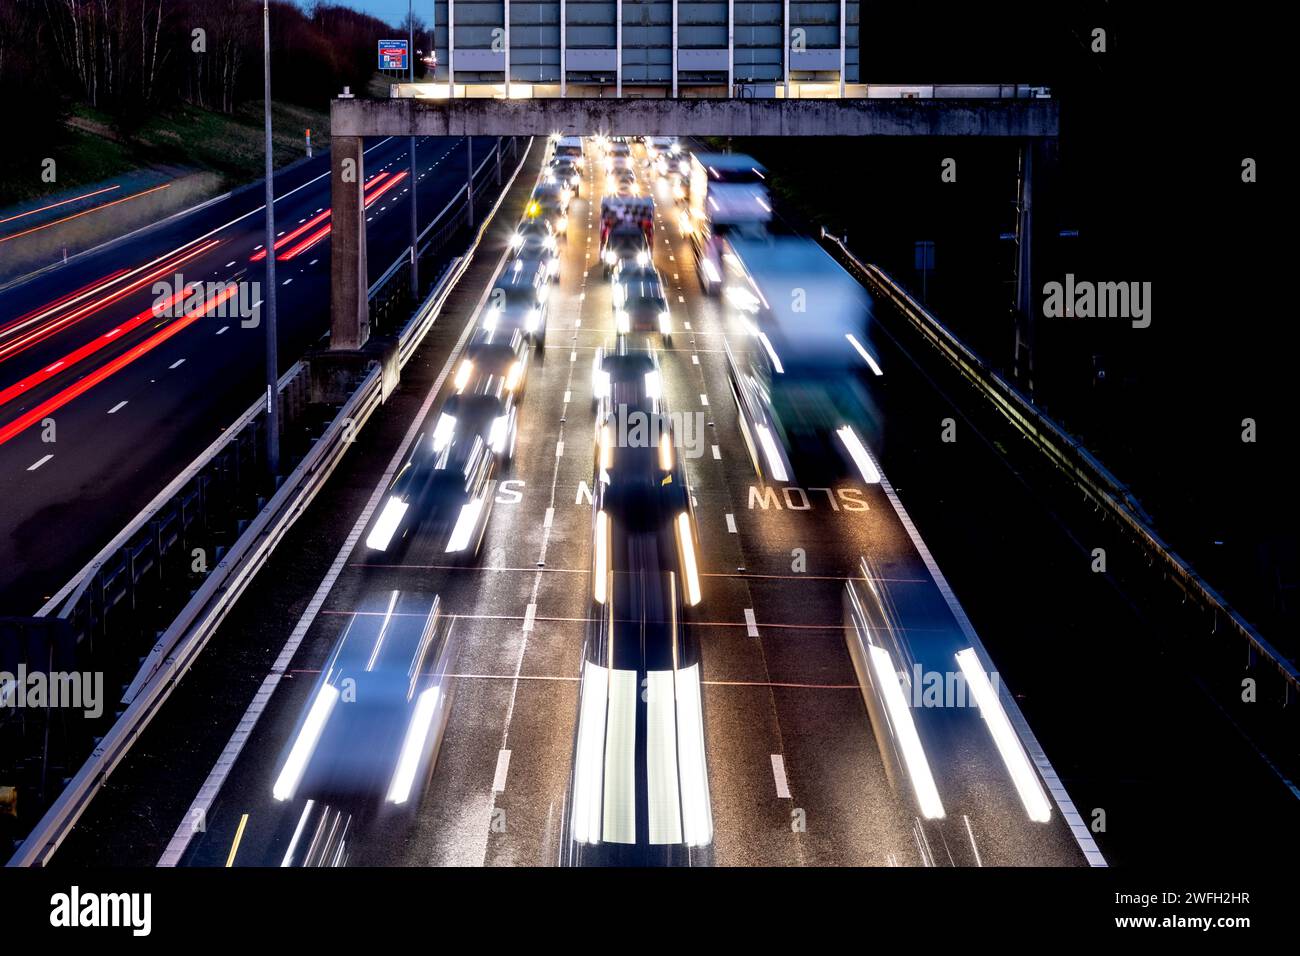 M6 trafic routier à péage. Photo de Shaun Fellows/Alamy Banque D'Images